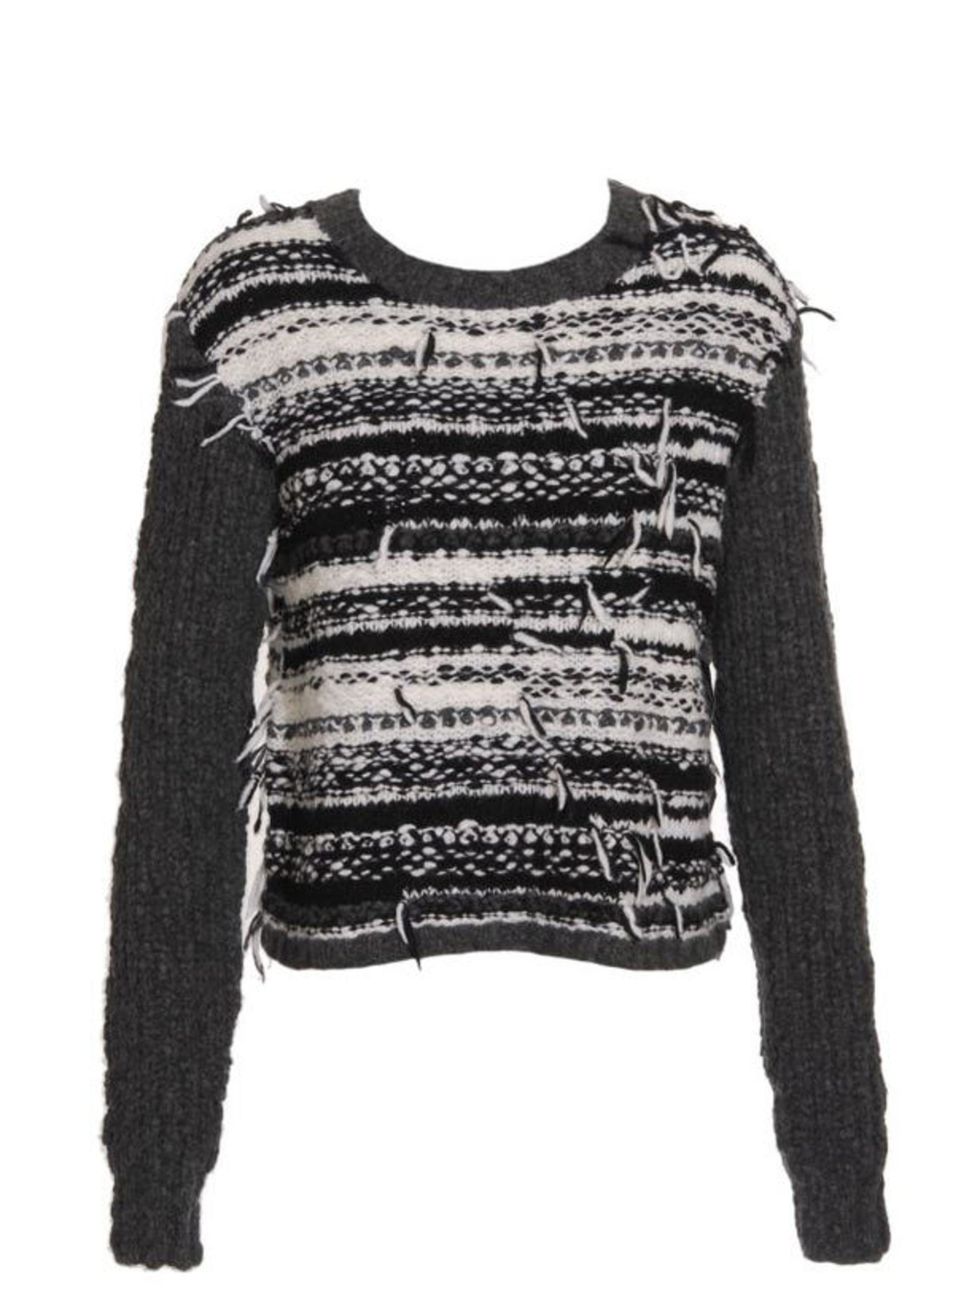 <p>Edun sweater, £295, at <a href="http://www.brownsfashion.com/home/">Browns Fashion</a></p>